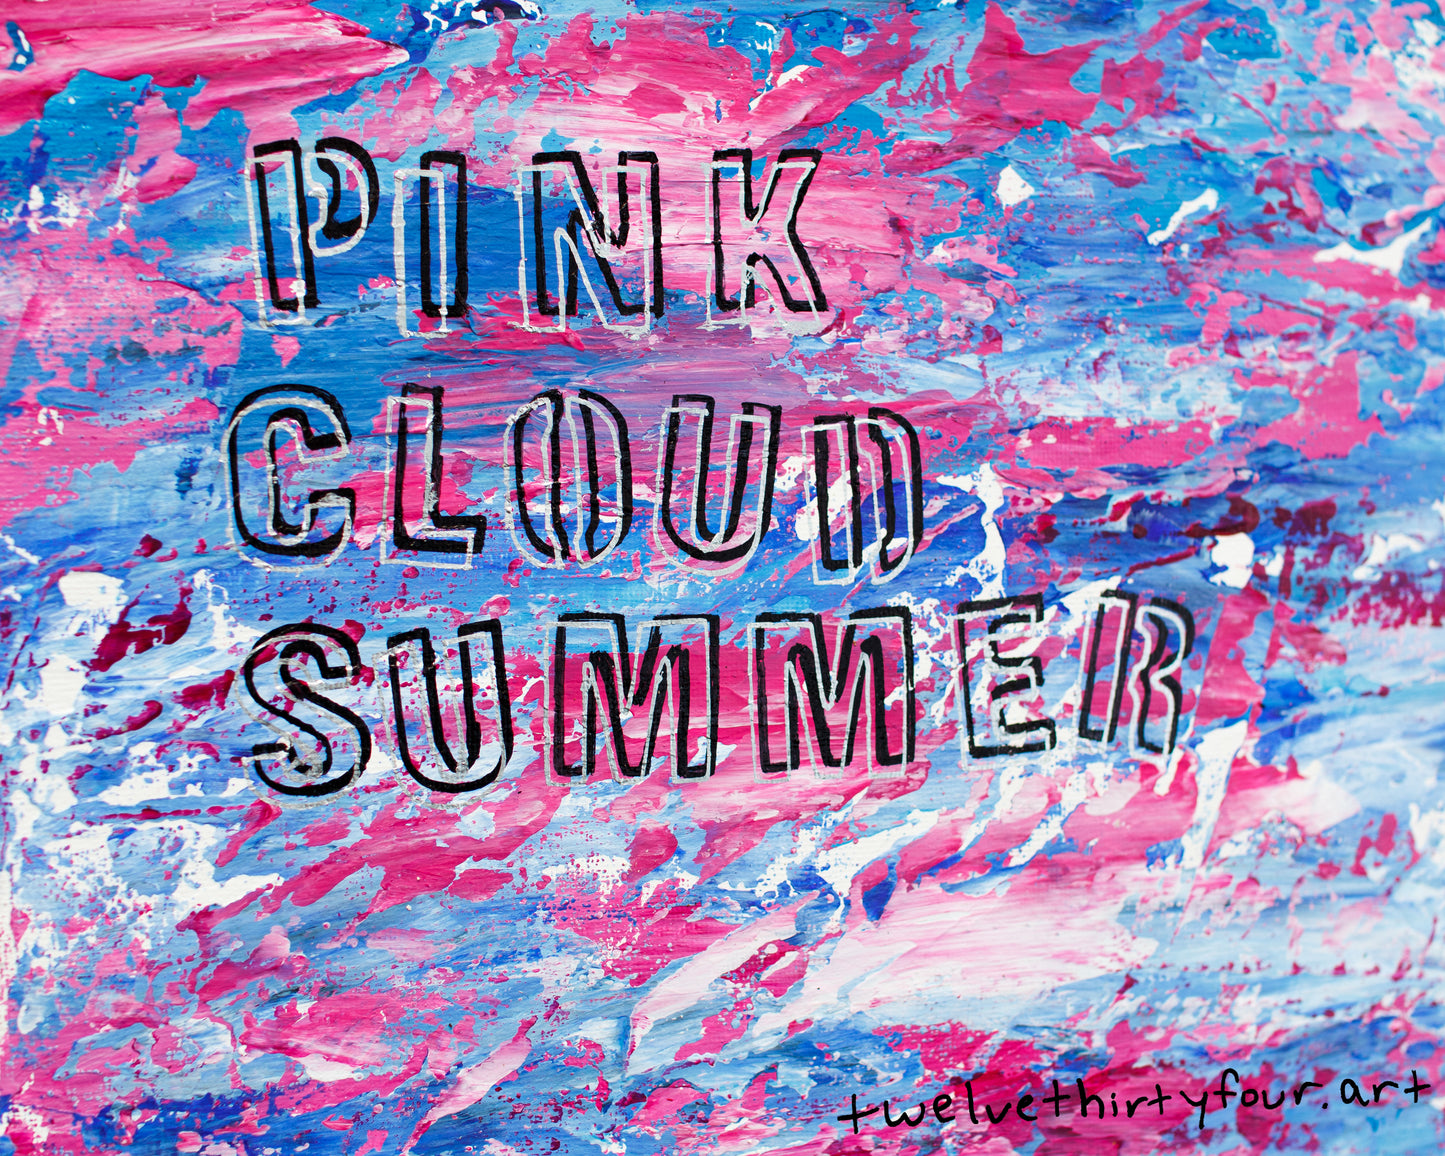 Pink Cloud Summer